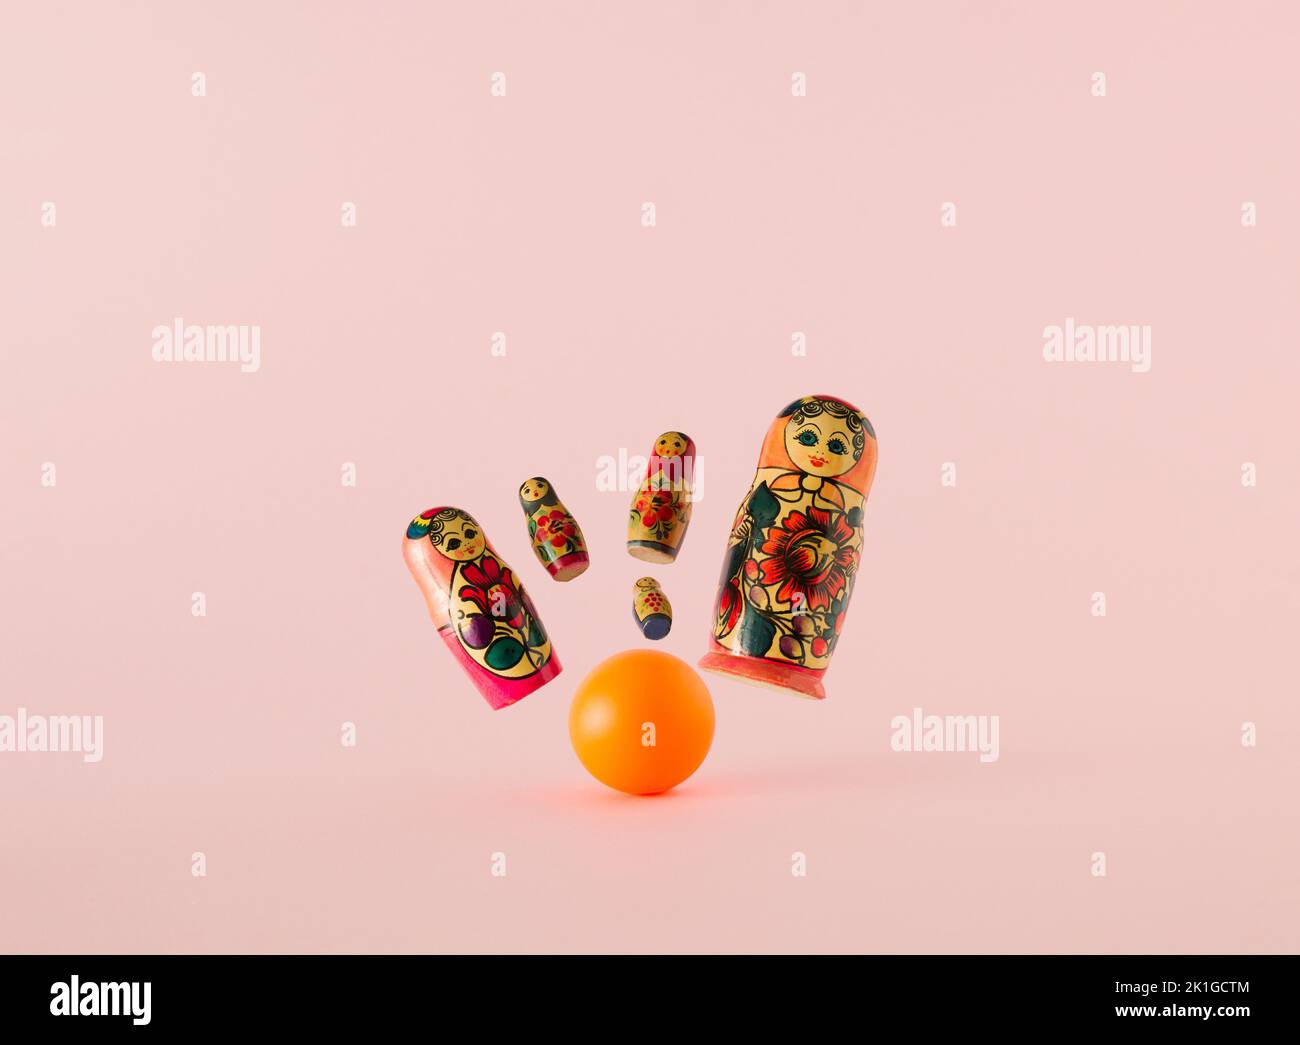 Russische Puppen, die als matryoshka oder babushka bekannt sind, als die Nadeln, die aus dem Schlag der orangefarbenen Bowlingkugel auf einem rosa Hintergrund fliegen. Minimalkonzept. Stockfoto